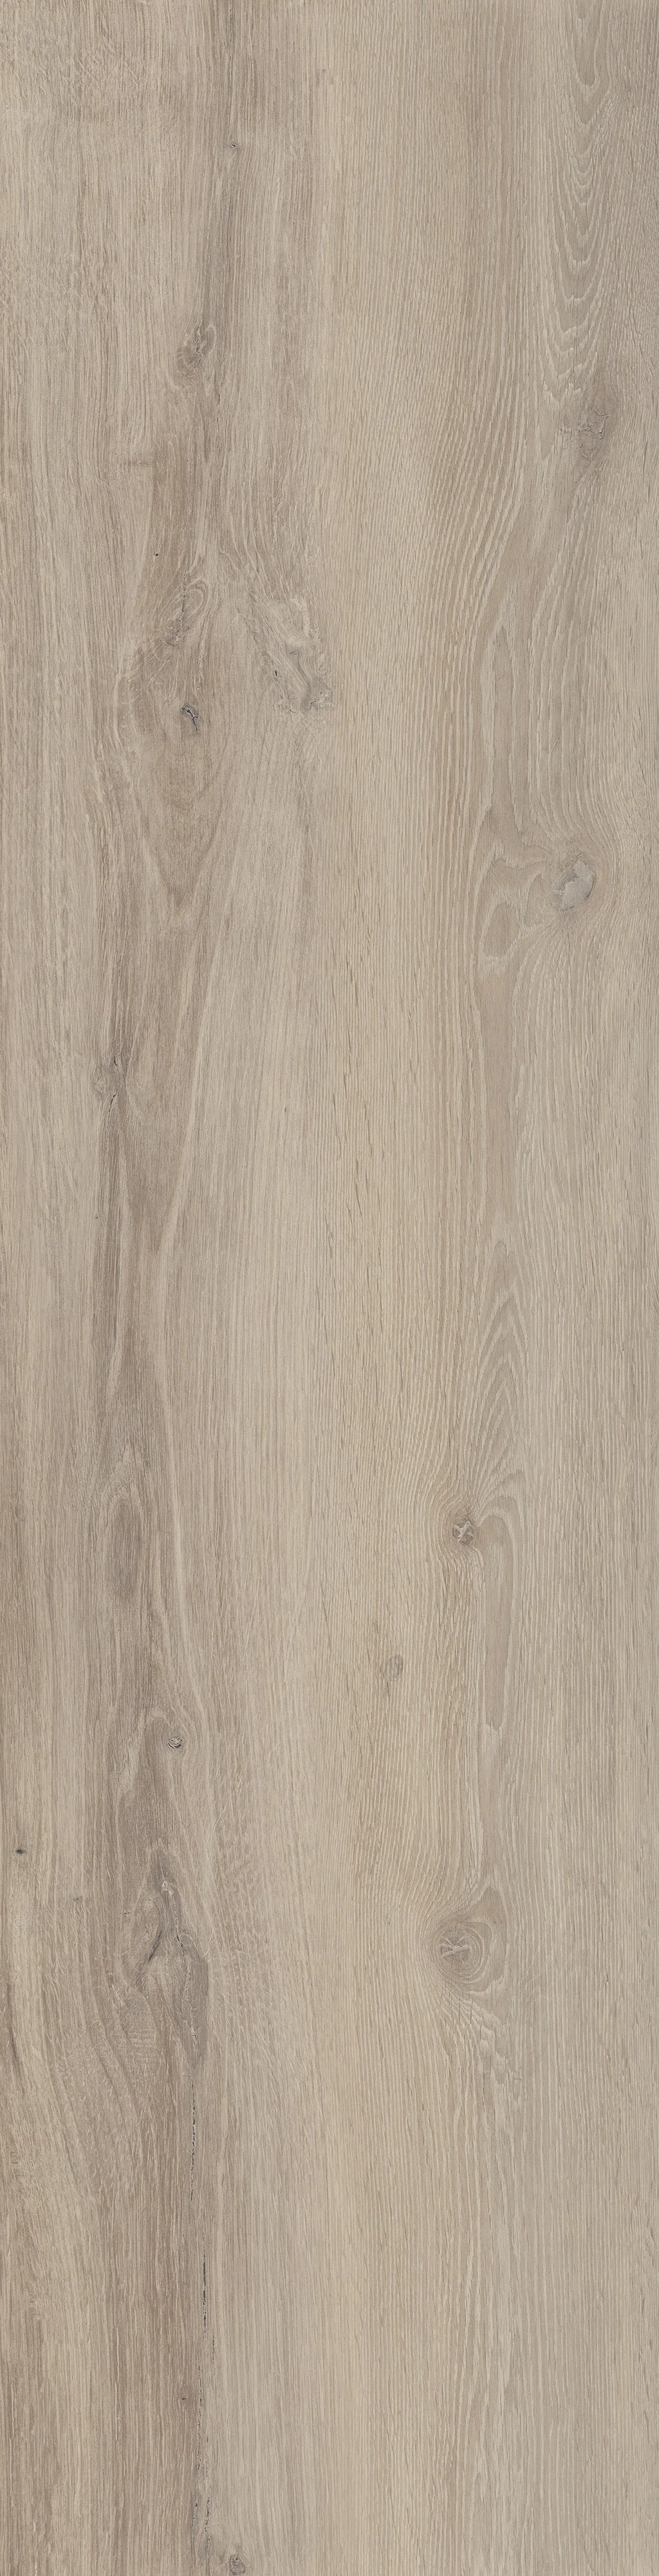 Castelvetro Woodland Maple 30x120 cm